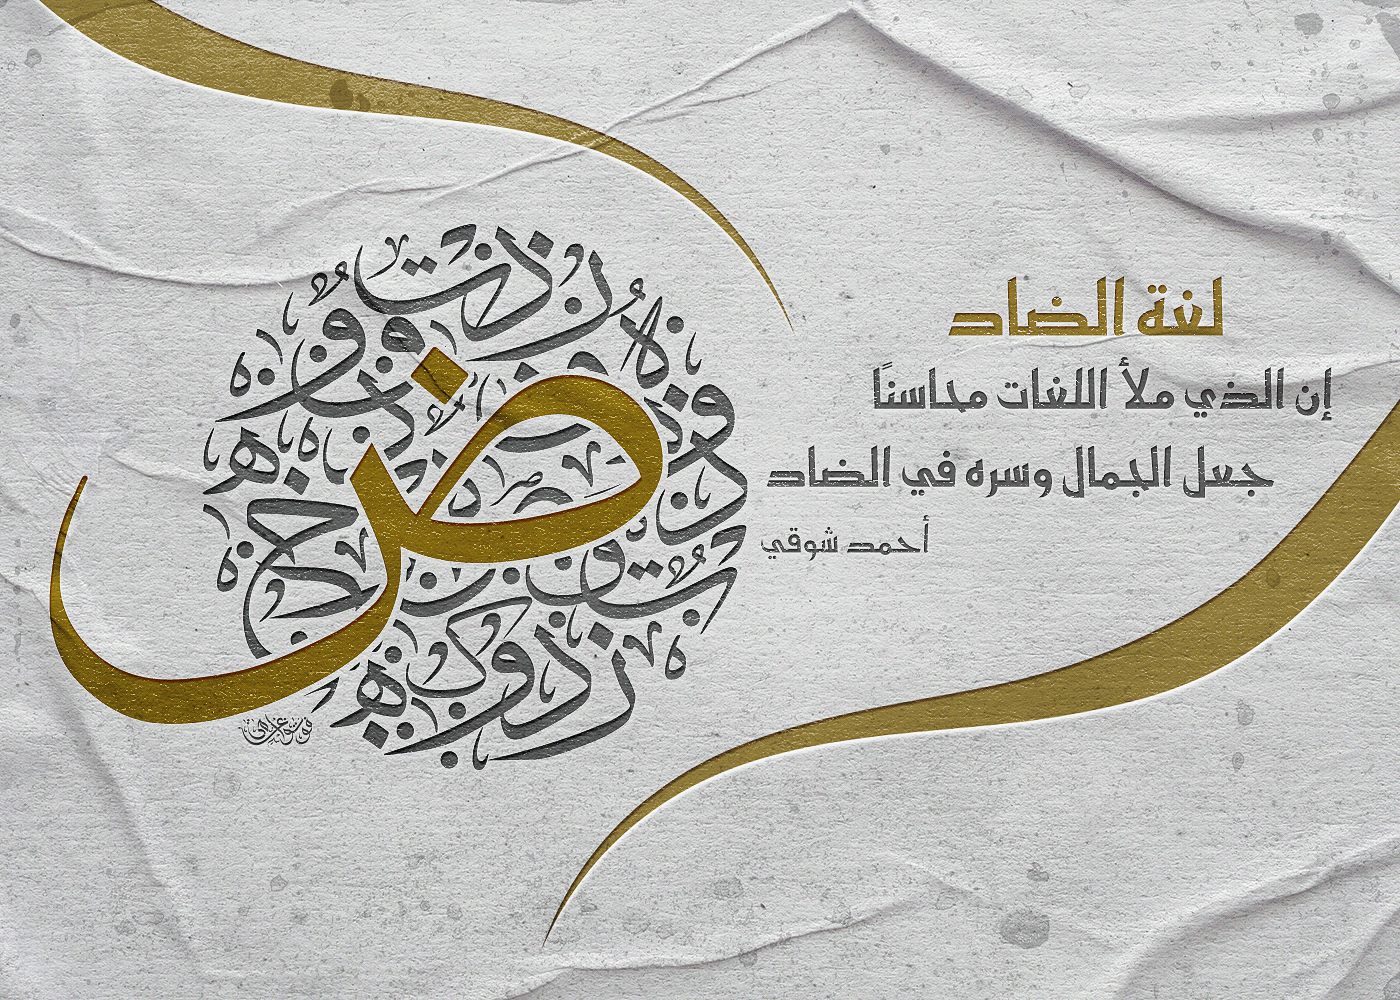 لوحات وبطاقات شعارات فنية بخطوط عربية مختلفة